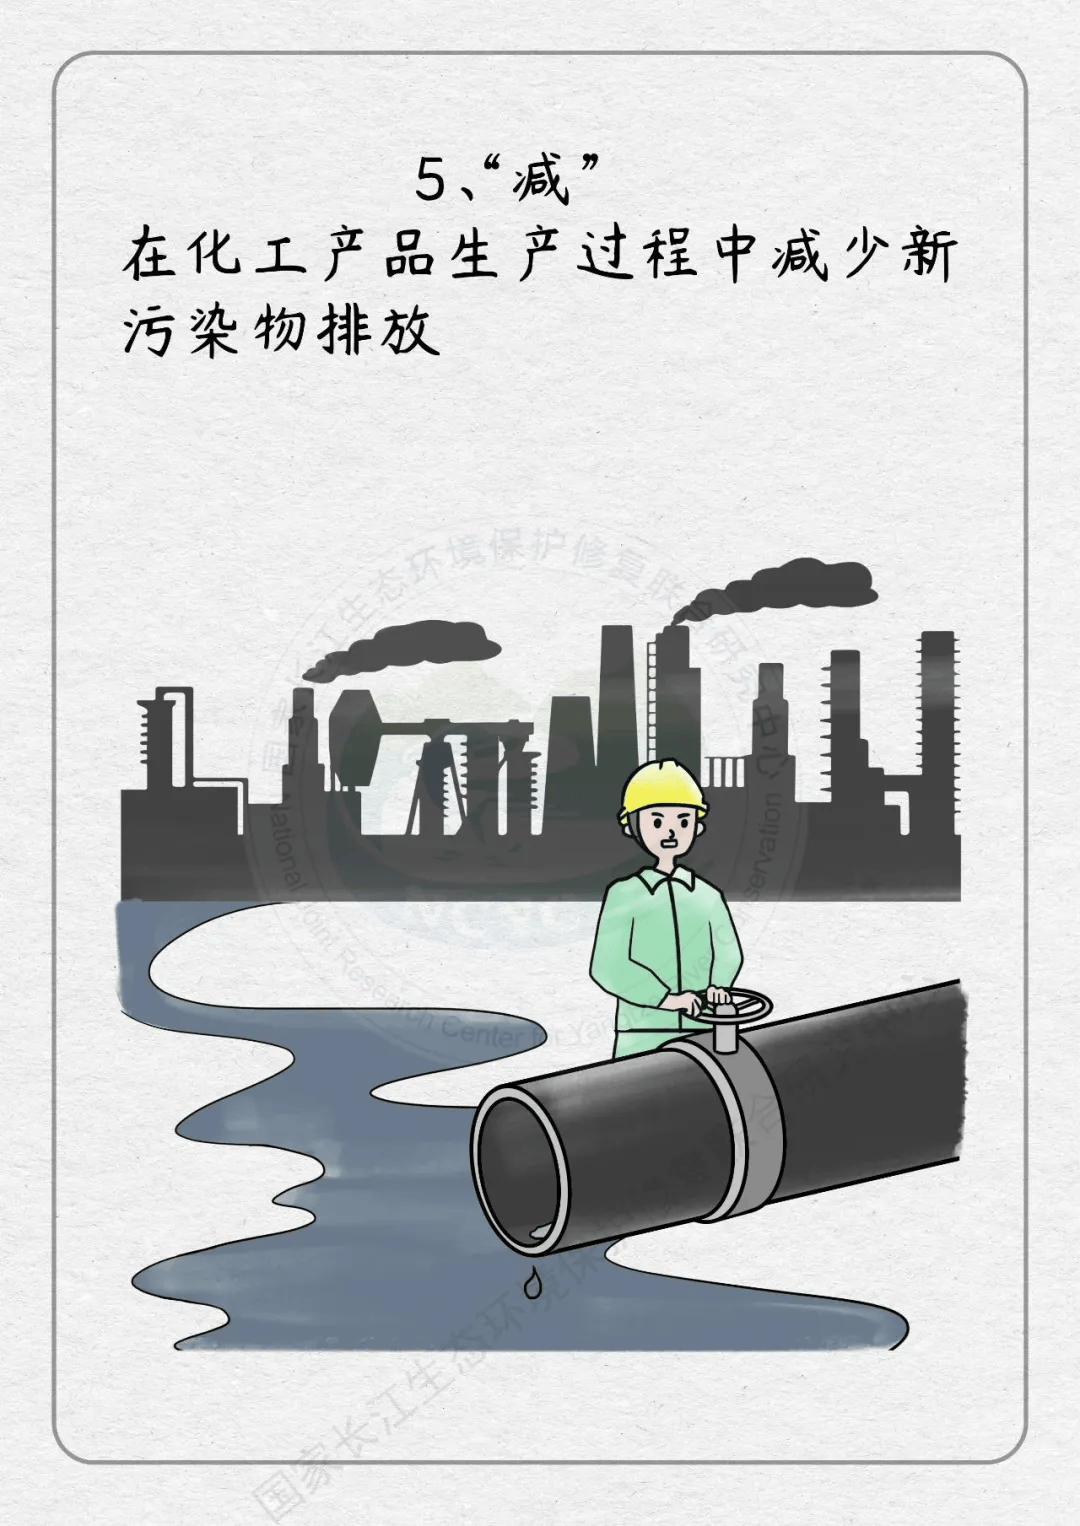 【生态环保】漫画说:新污染物的罪与治